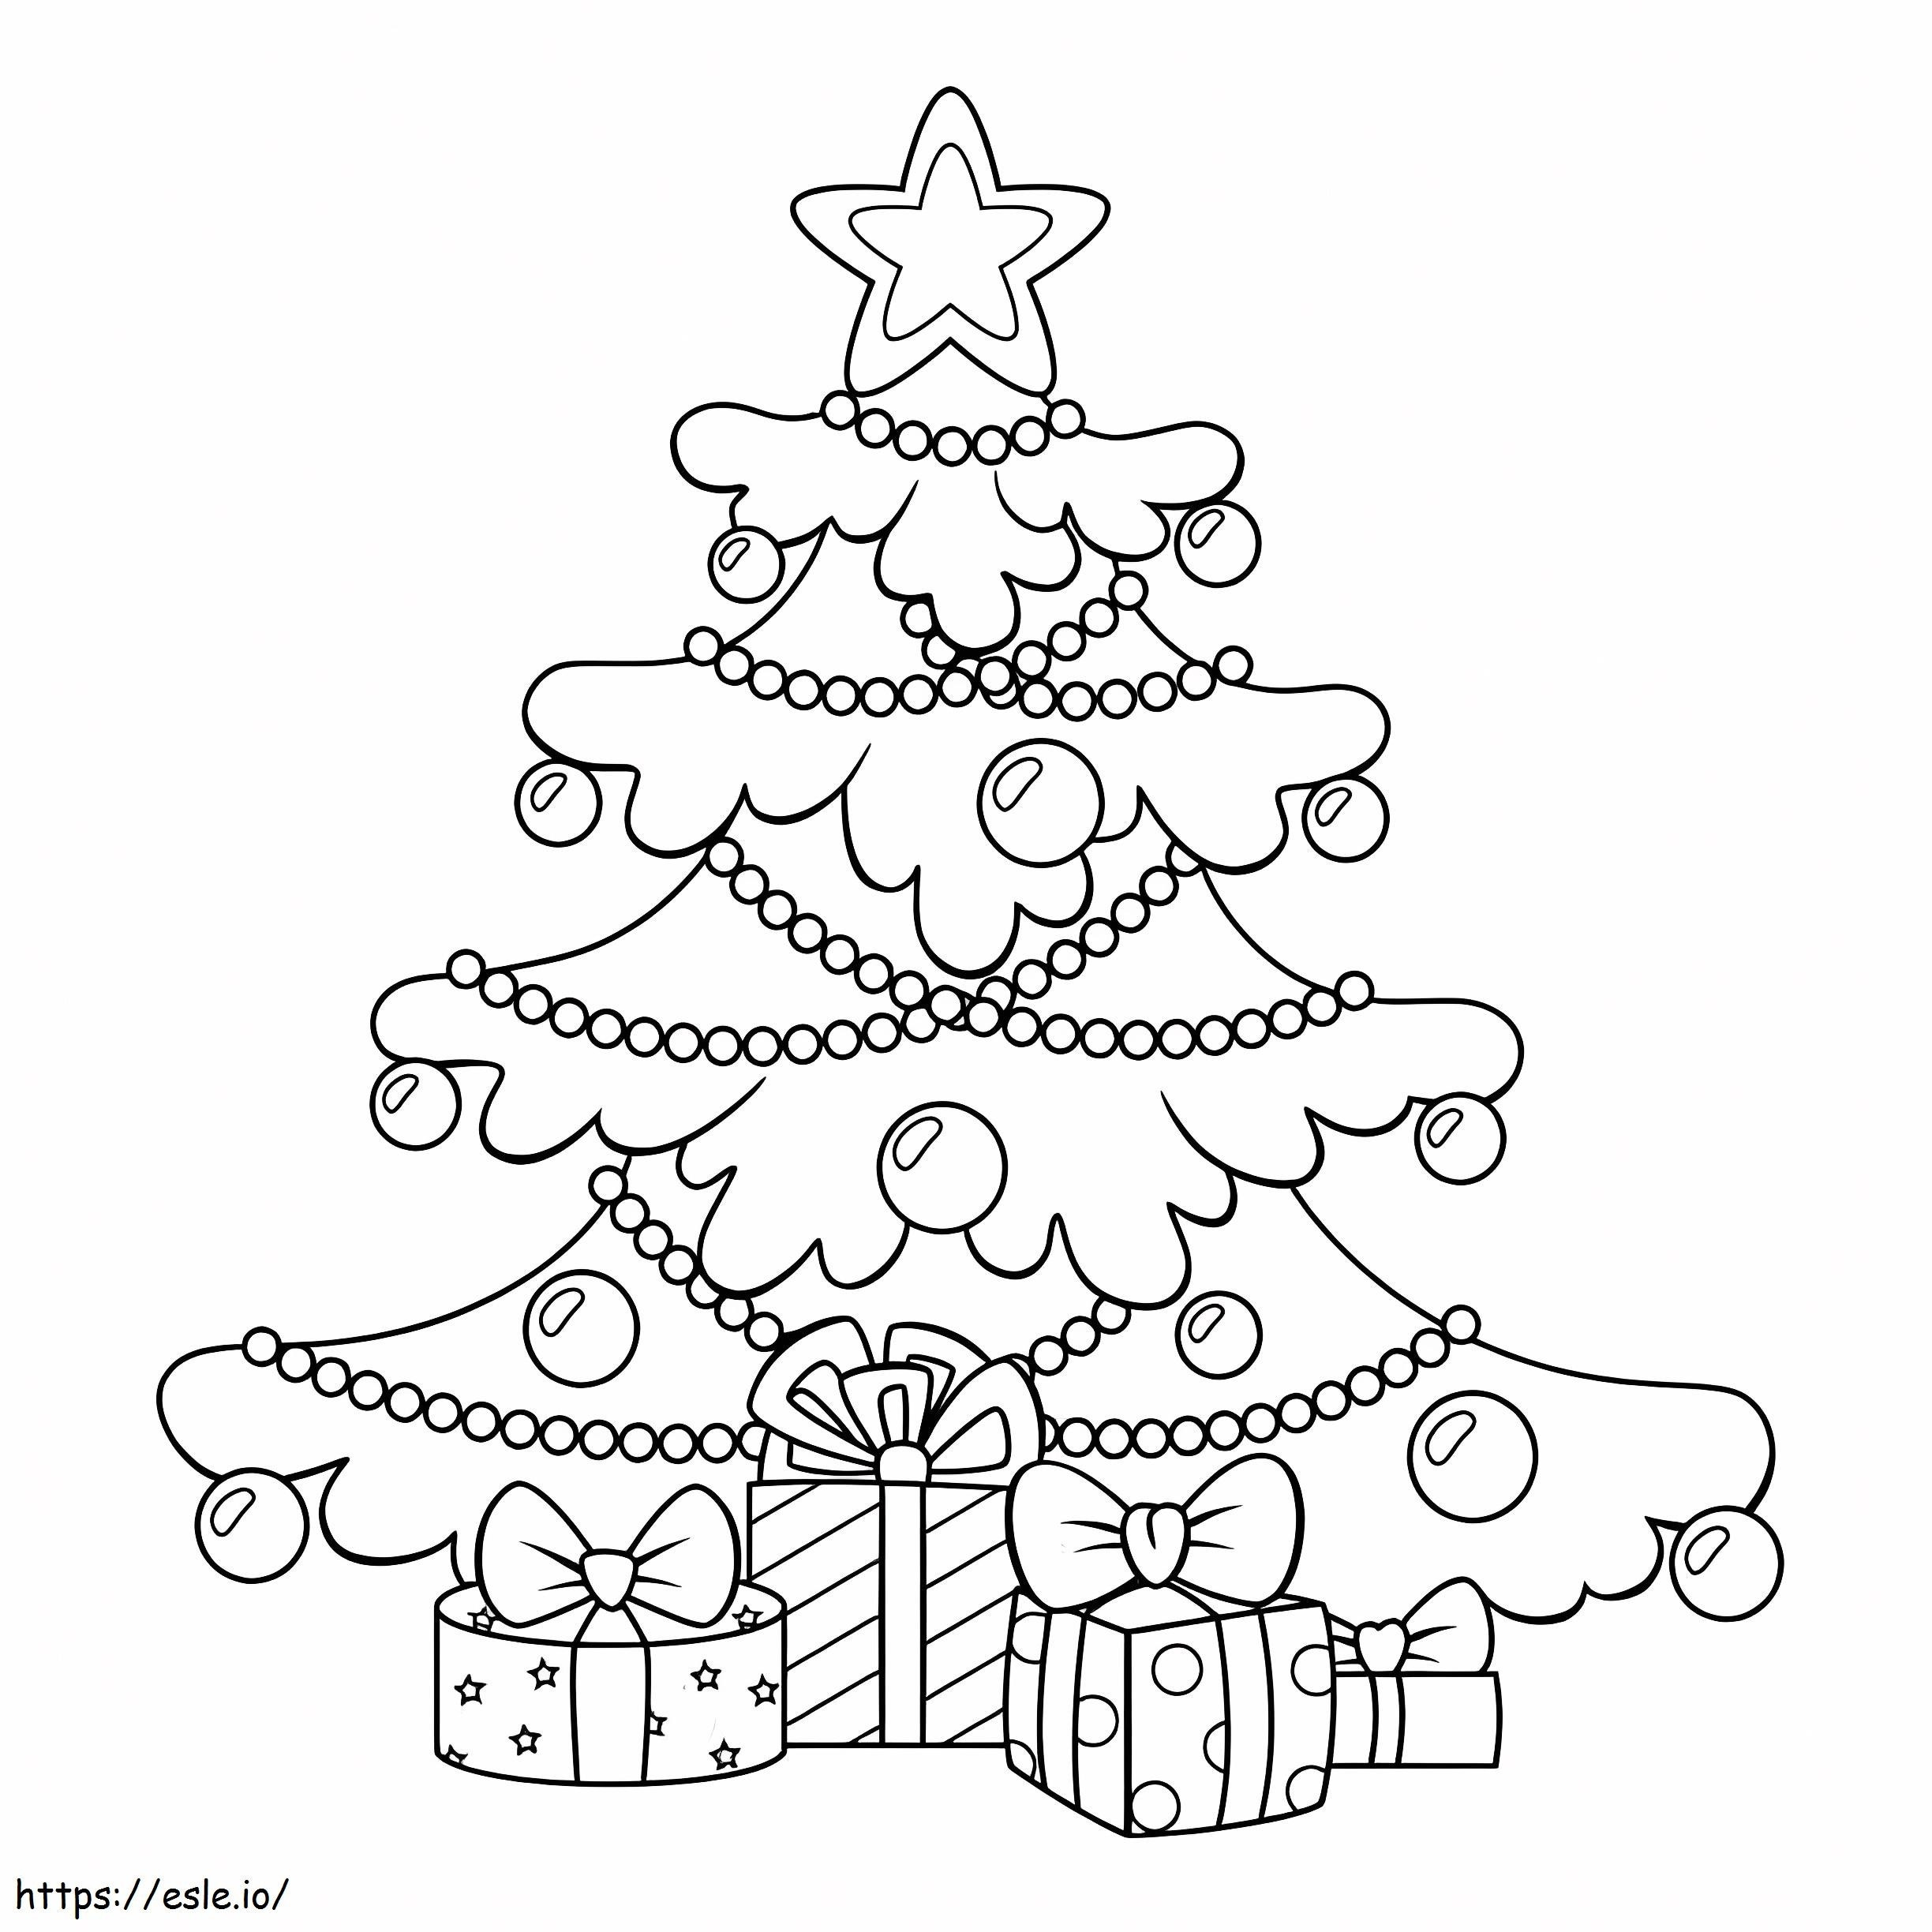 Weihnachtsbaum mit Geschenkboxen ausmalbilder